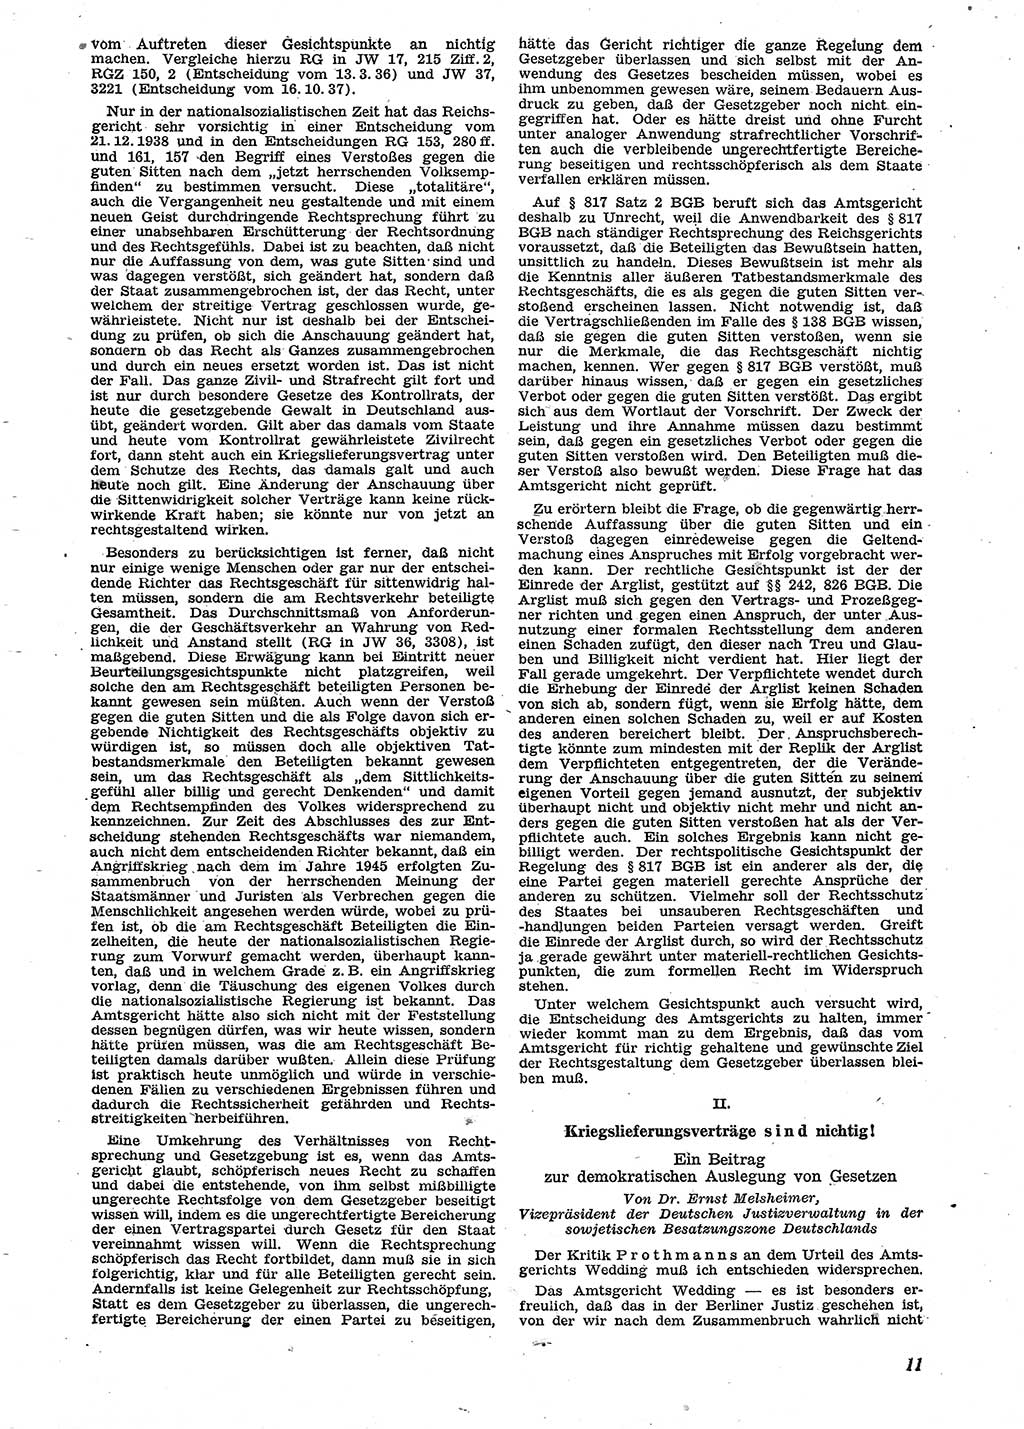 Neue Justiz (NJ), Zeitschrift für Recht und Rechtswissenschaft [Sowjetische Besatzungszone (SBZ) Deutschland], 2. Jahrgang 1948, Seite 11 (NJ SBZ Dtl. 1948, S. 11)